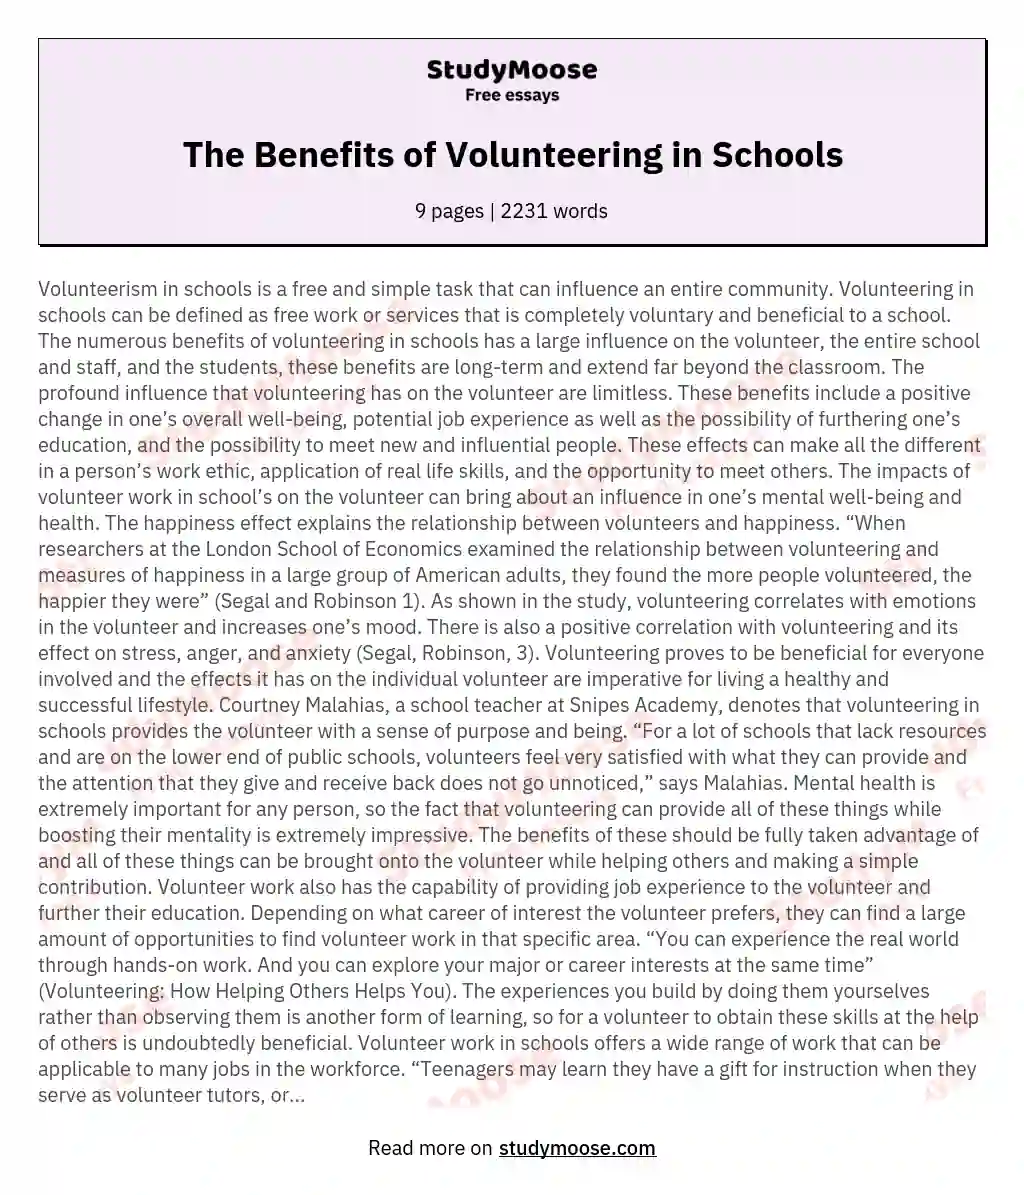 The Benefits of Volunteering in Schools essay